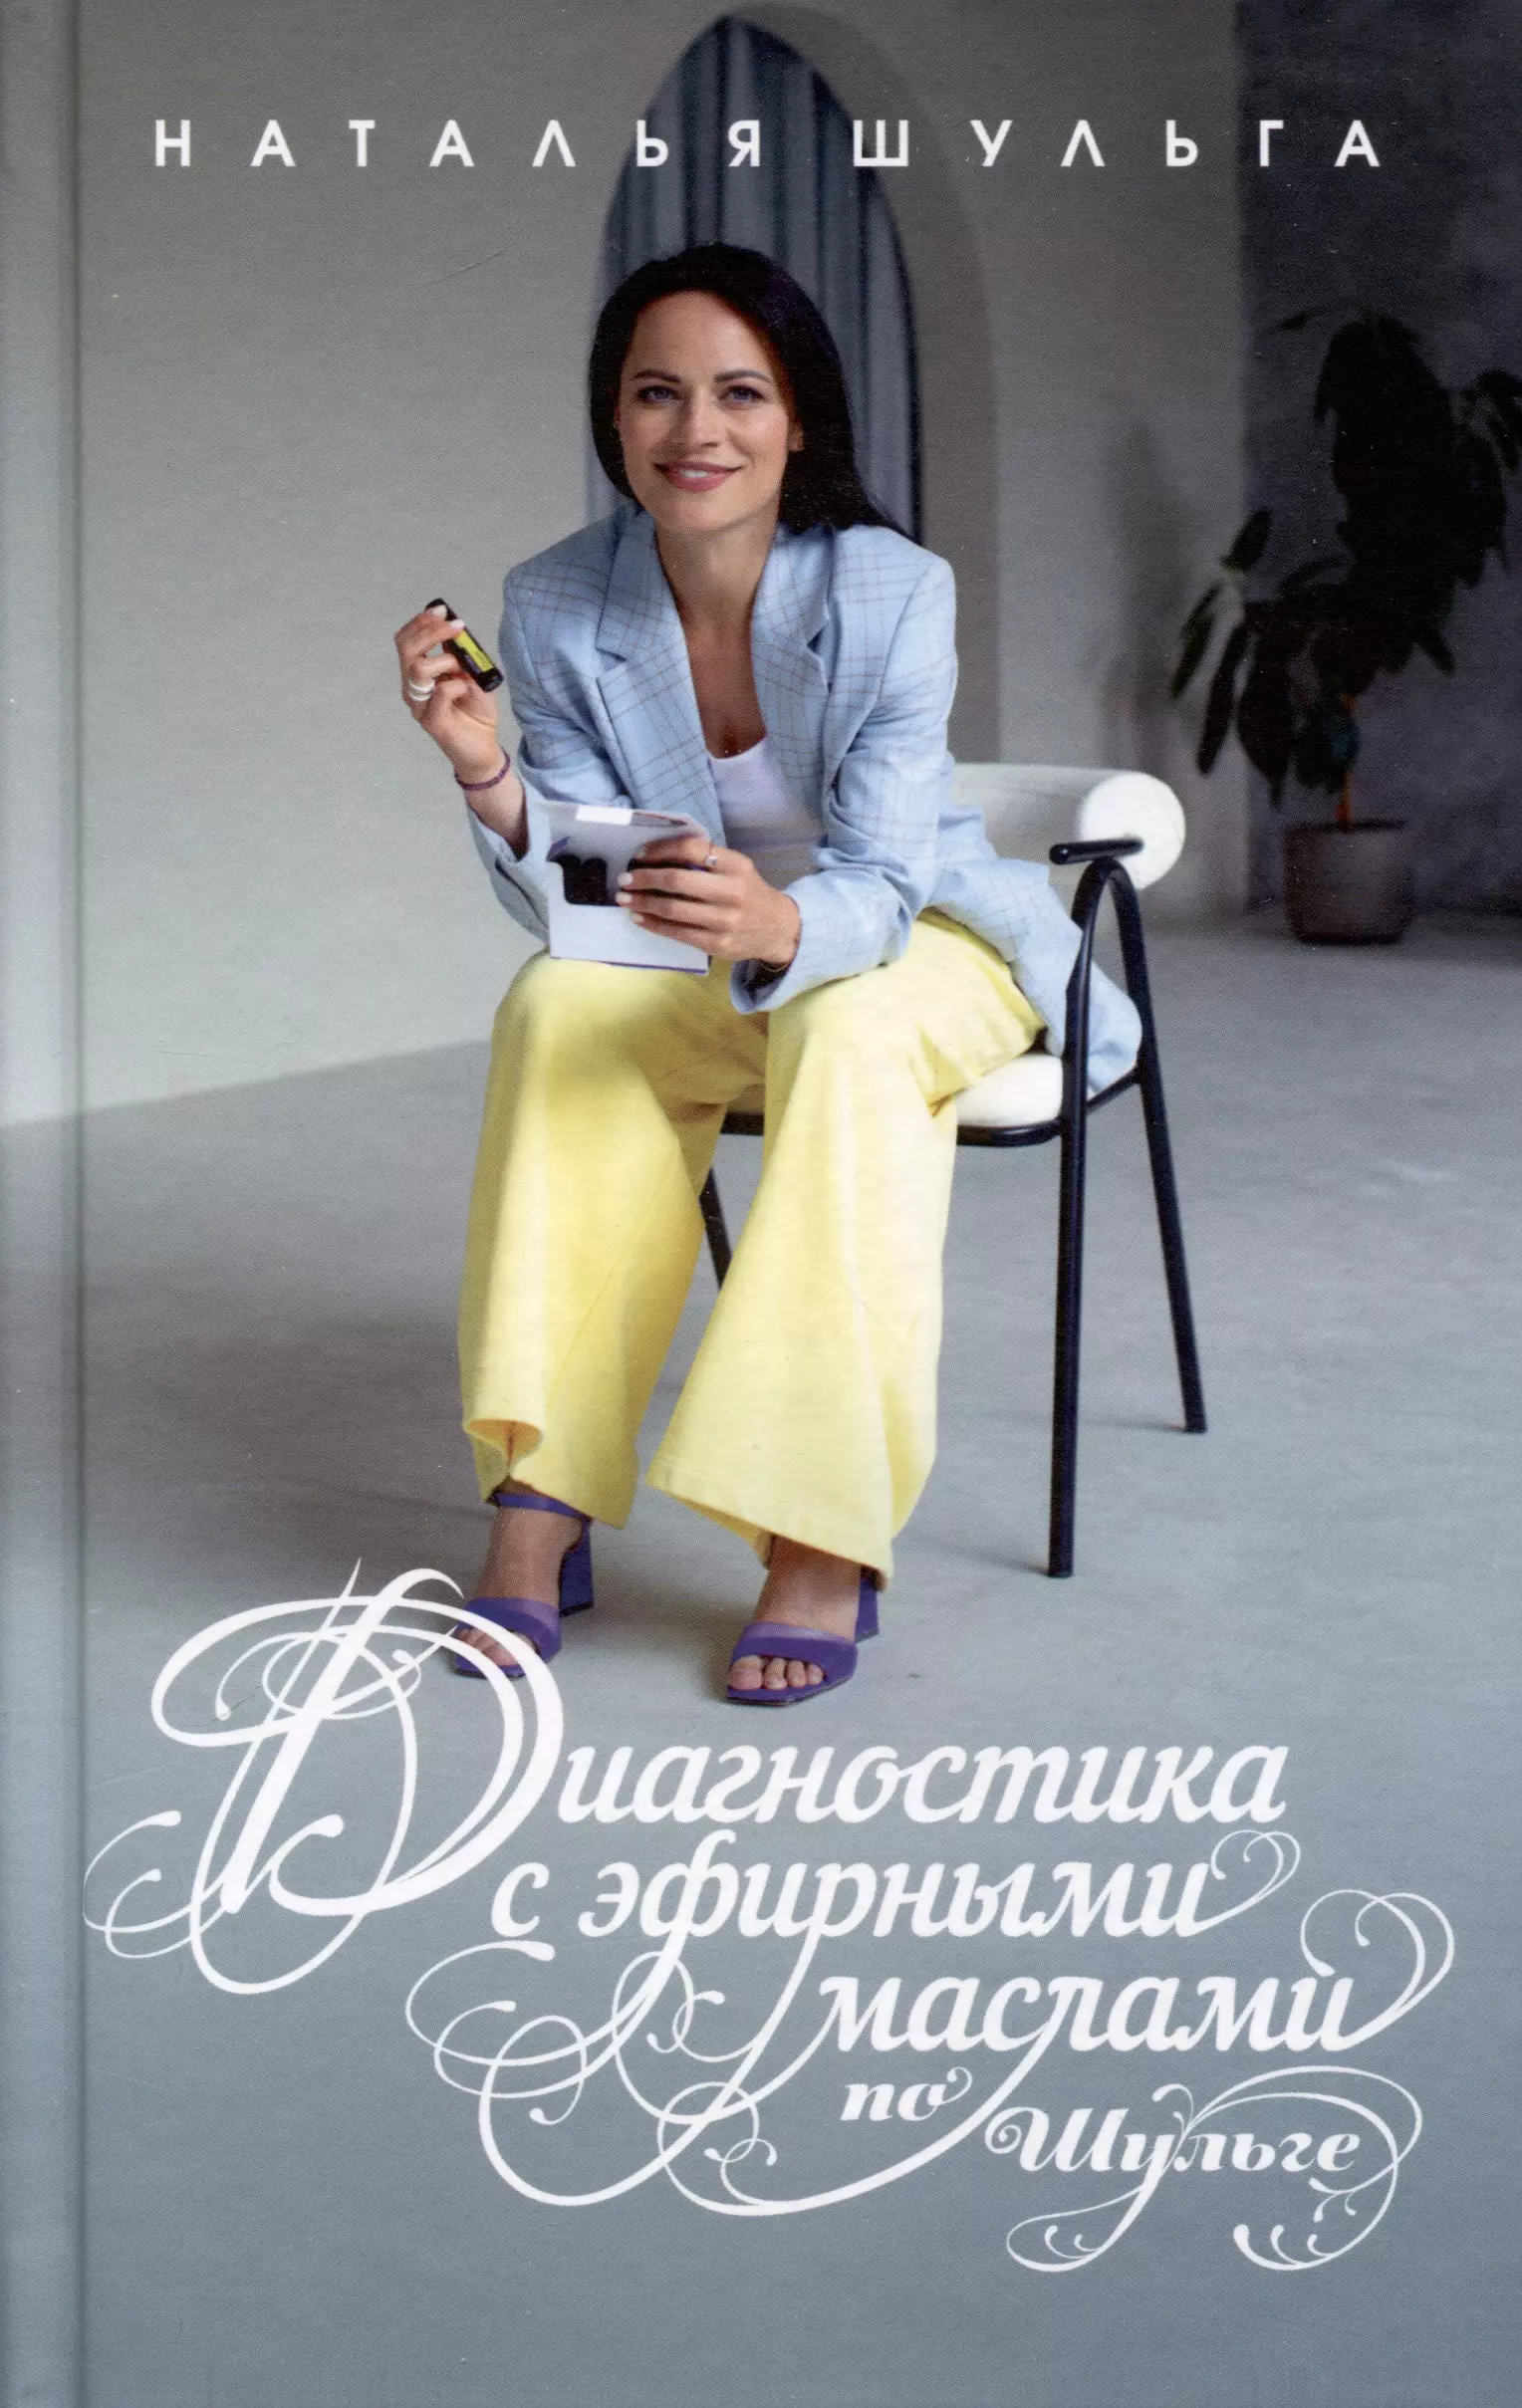 Шульга Наталья Диагностика с эфирными маслами по Шульге шульга н ароматерапия по шульге